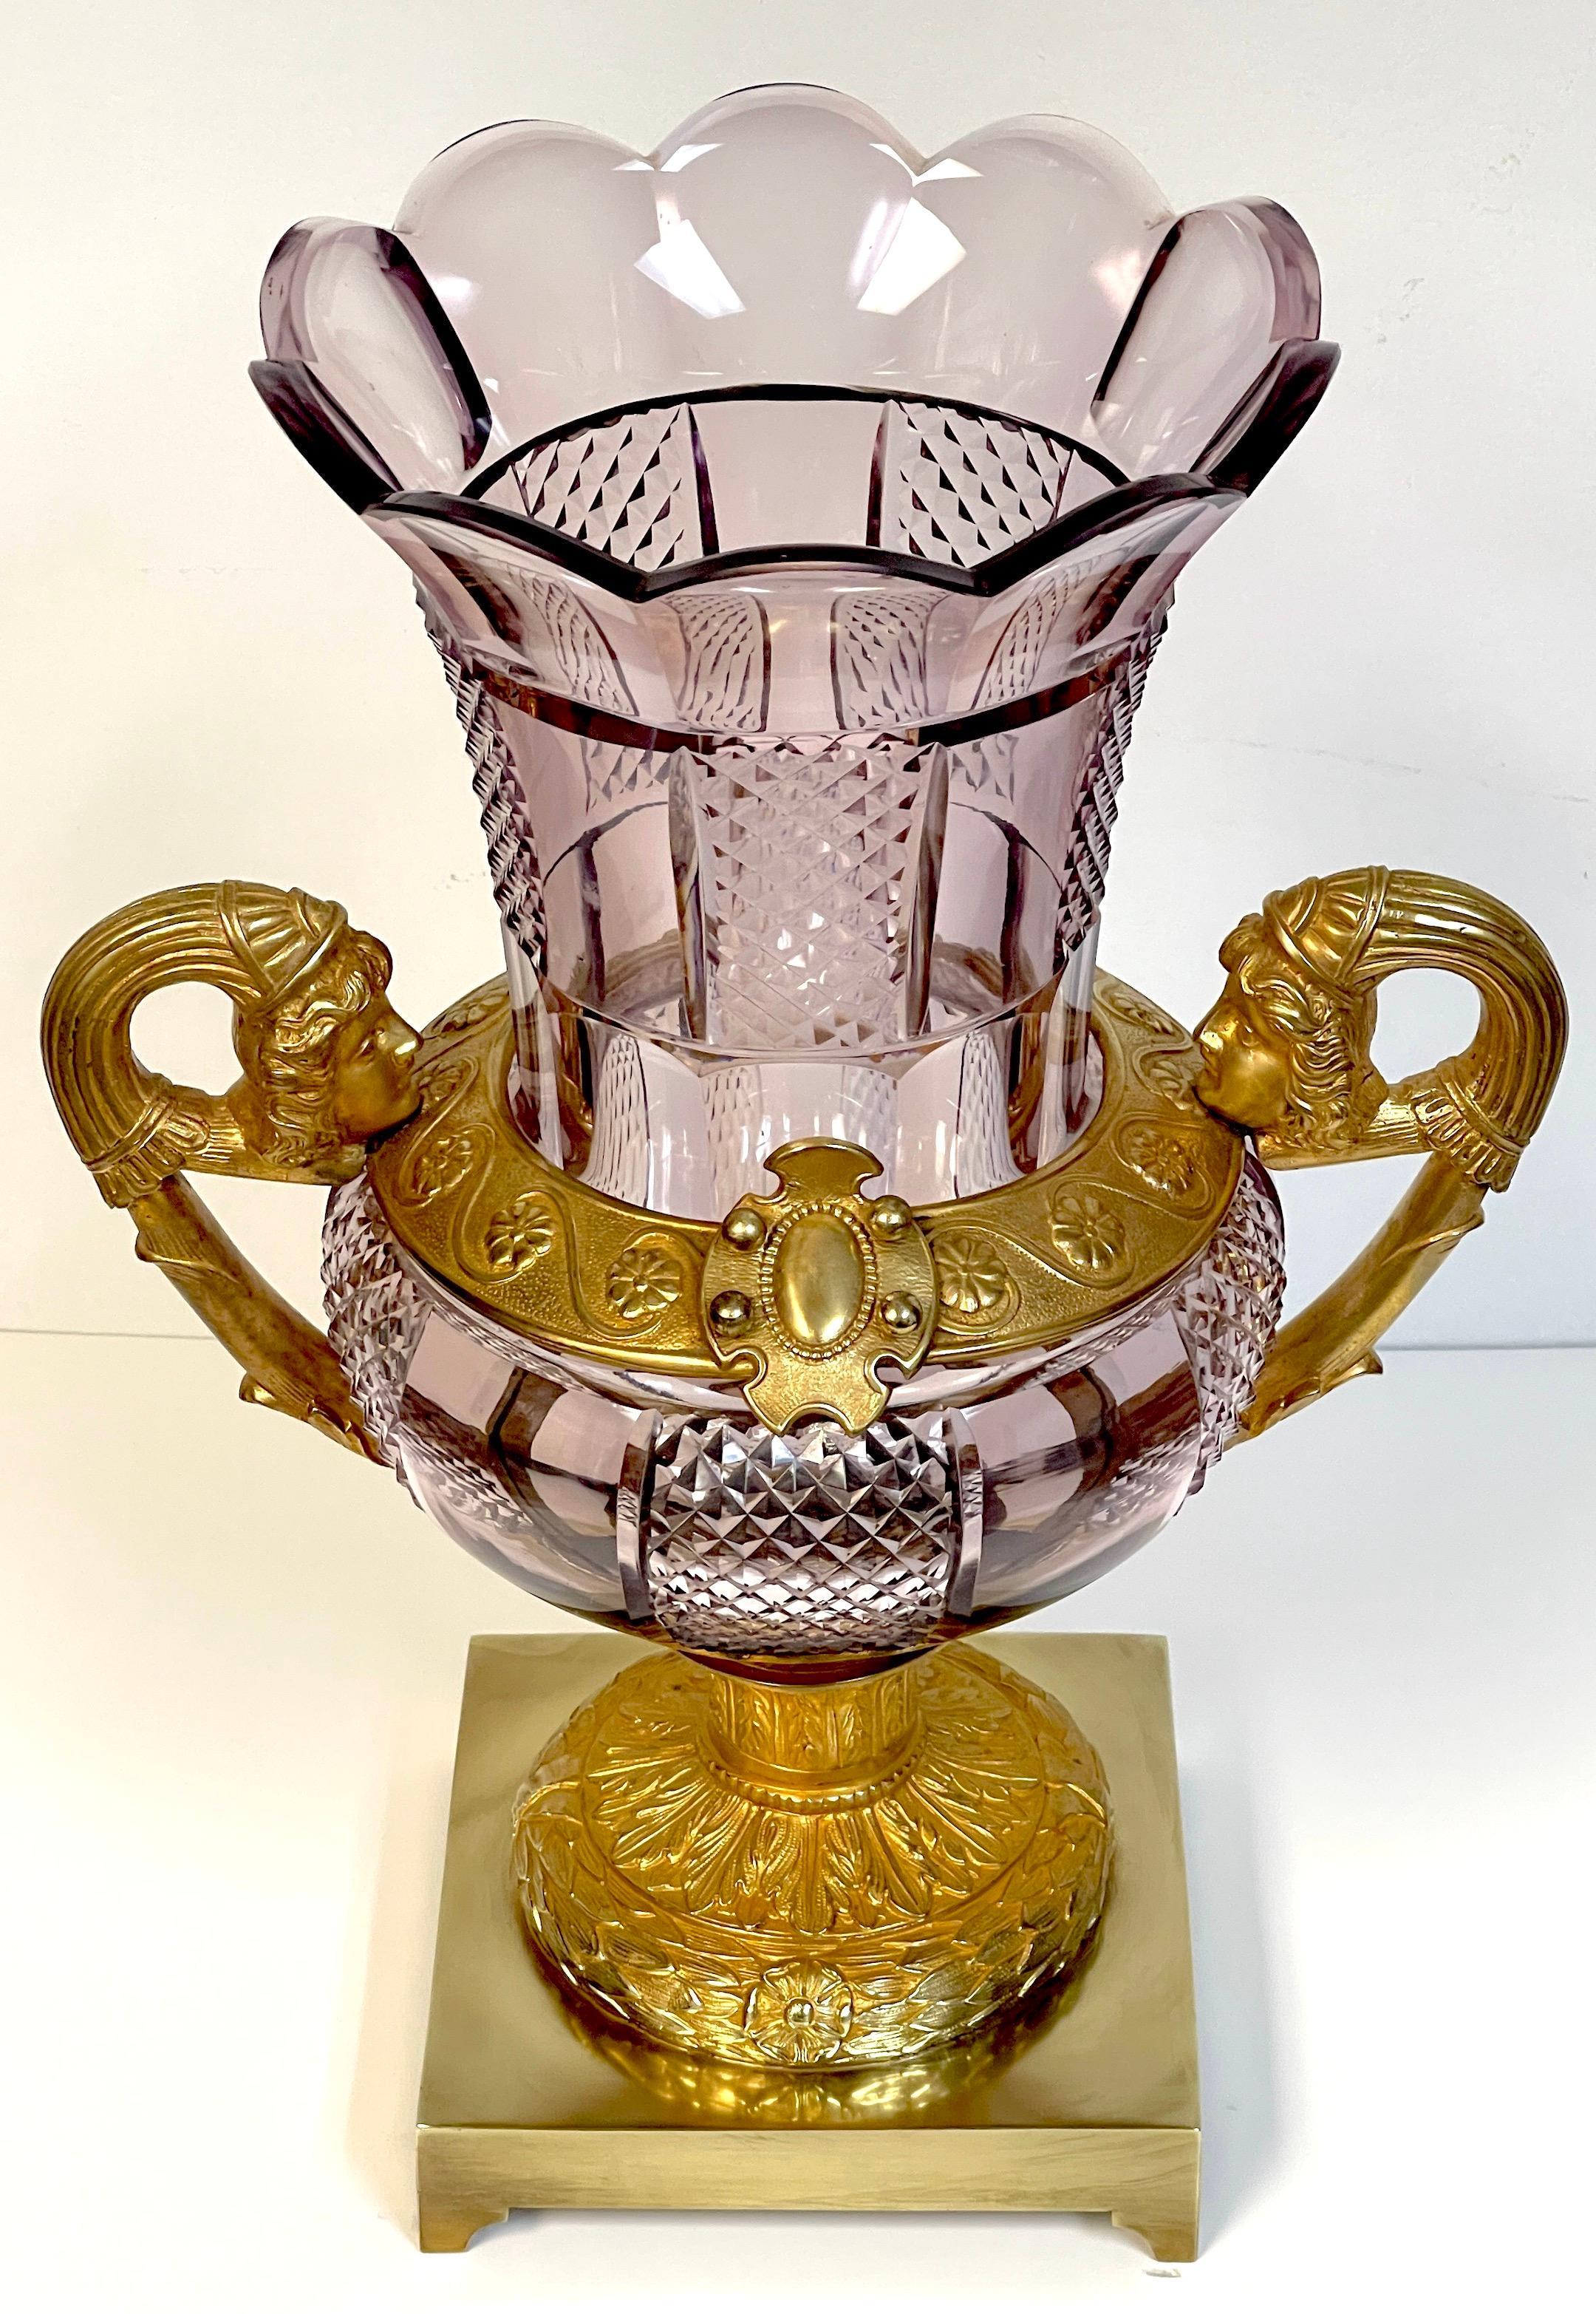 Große russische neoklassische Vase aus Ormolu und geschliffenem Amethystglas aus dem 19.
St. Petersburg, Mitte des 19. Jahrhunderts 

Diese große und imposante Vase aus St. Petersburg, die einen herrlichen Einblick in den russischen Neoklassizismus